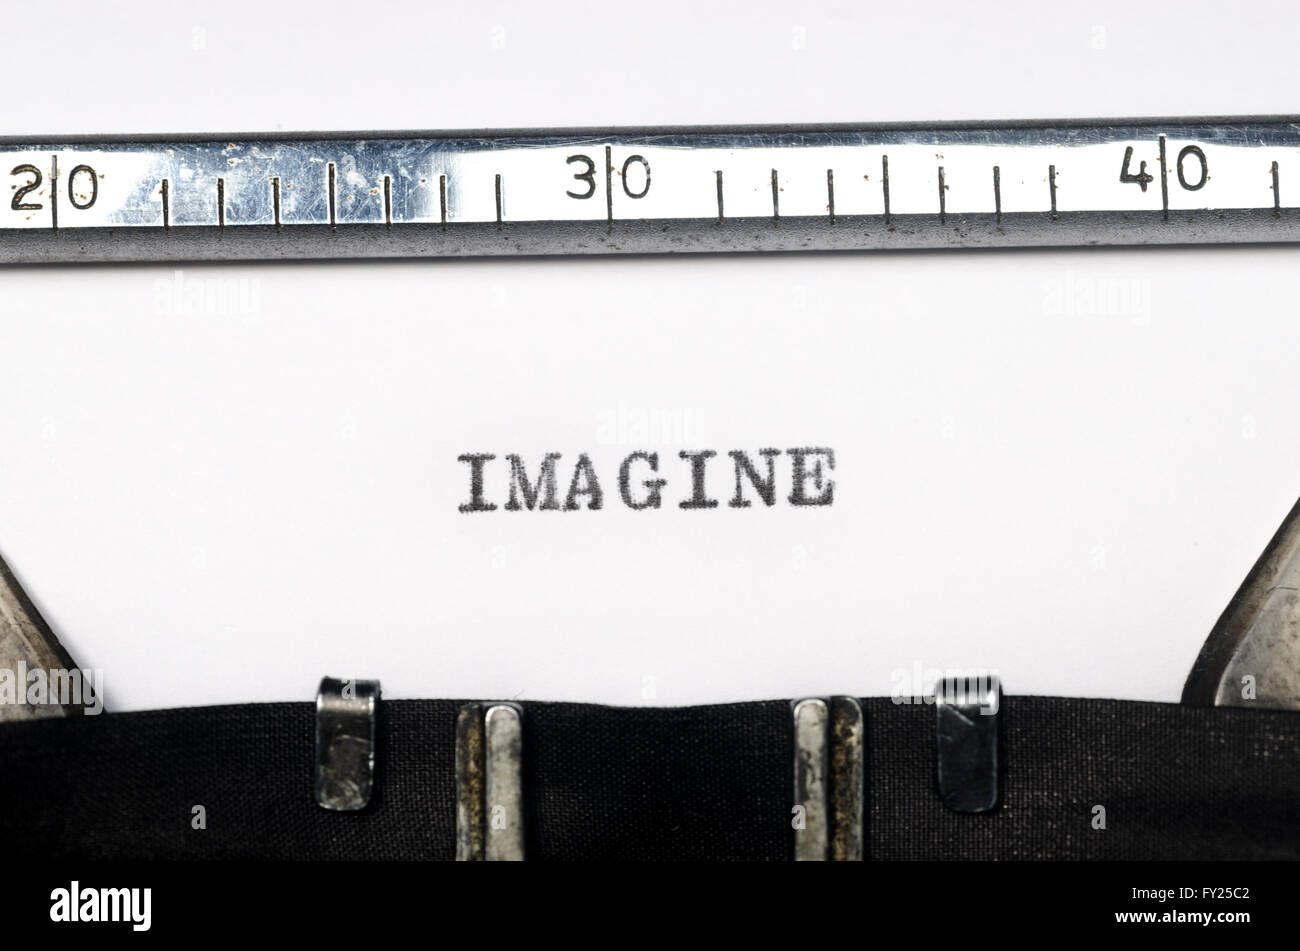 Imaginer mot tapé sur la vieille machine à écrire Banque D'Images